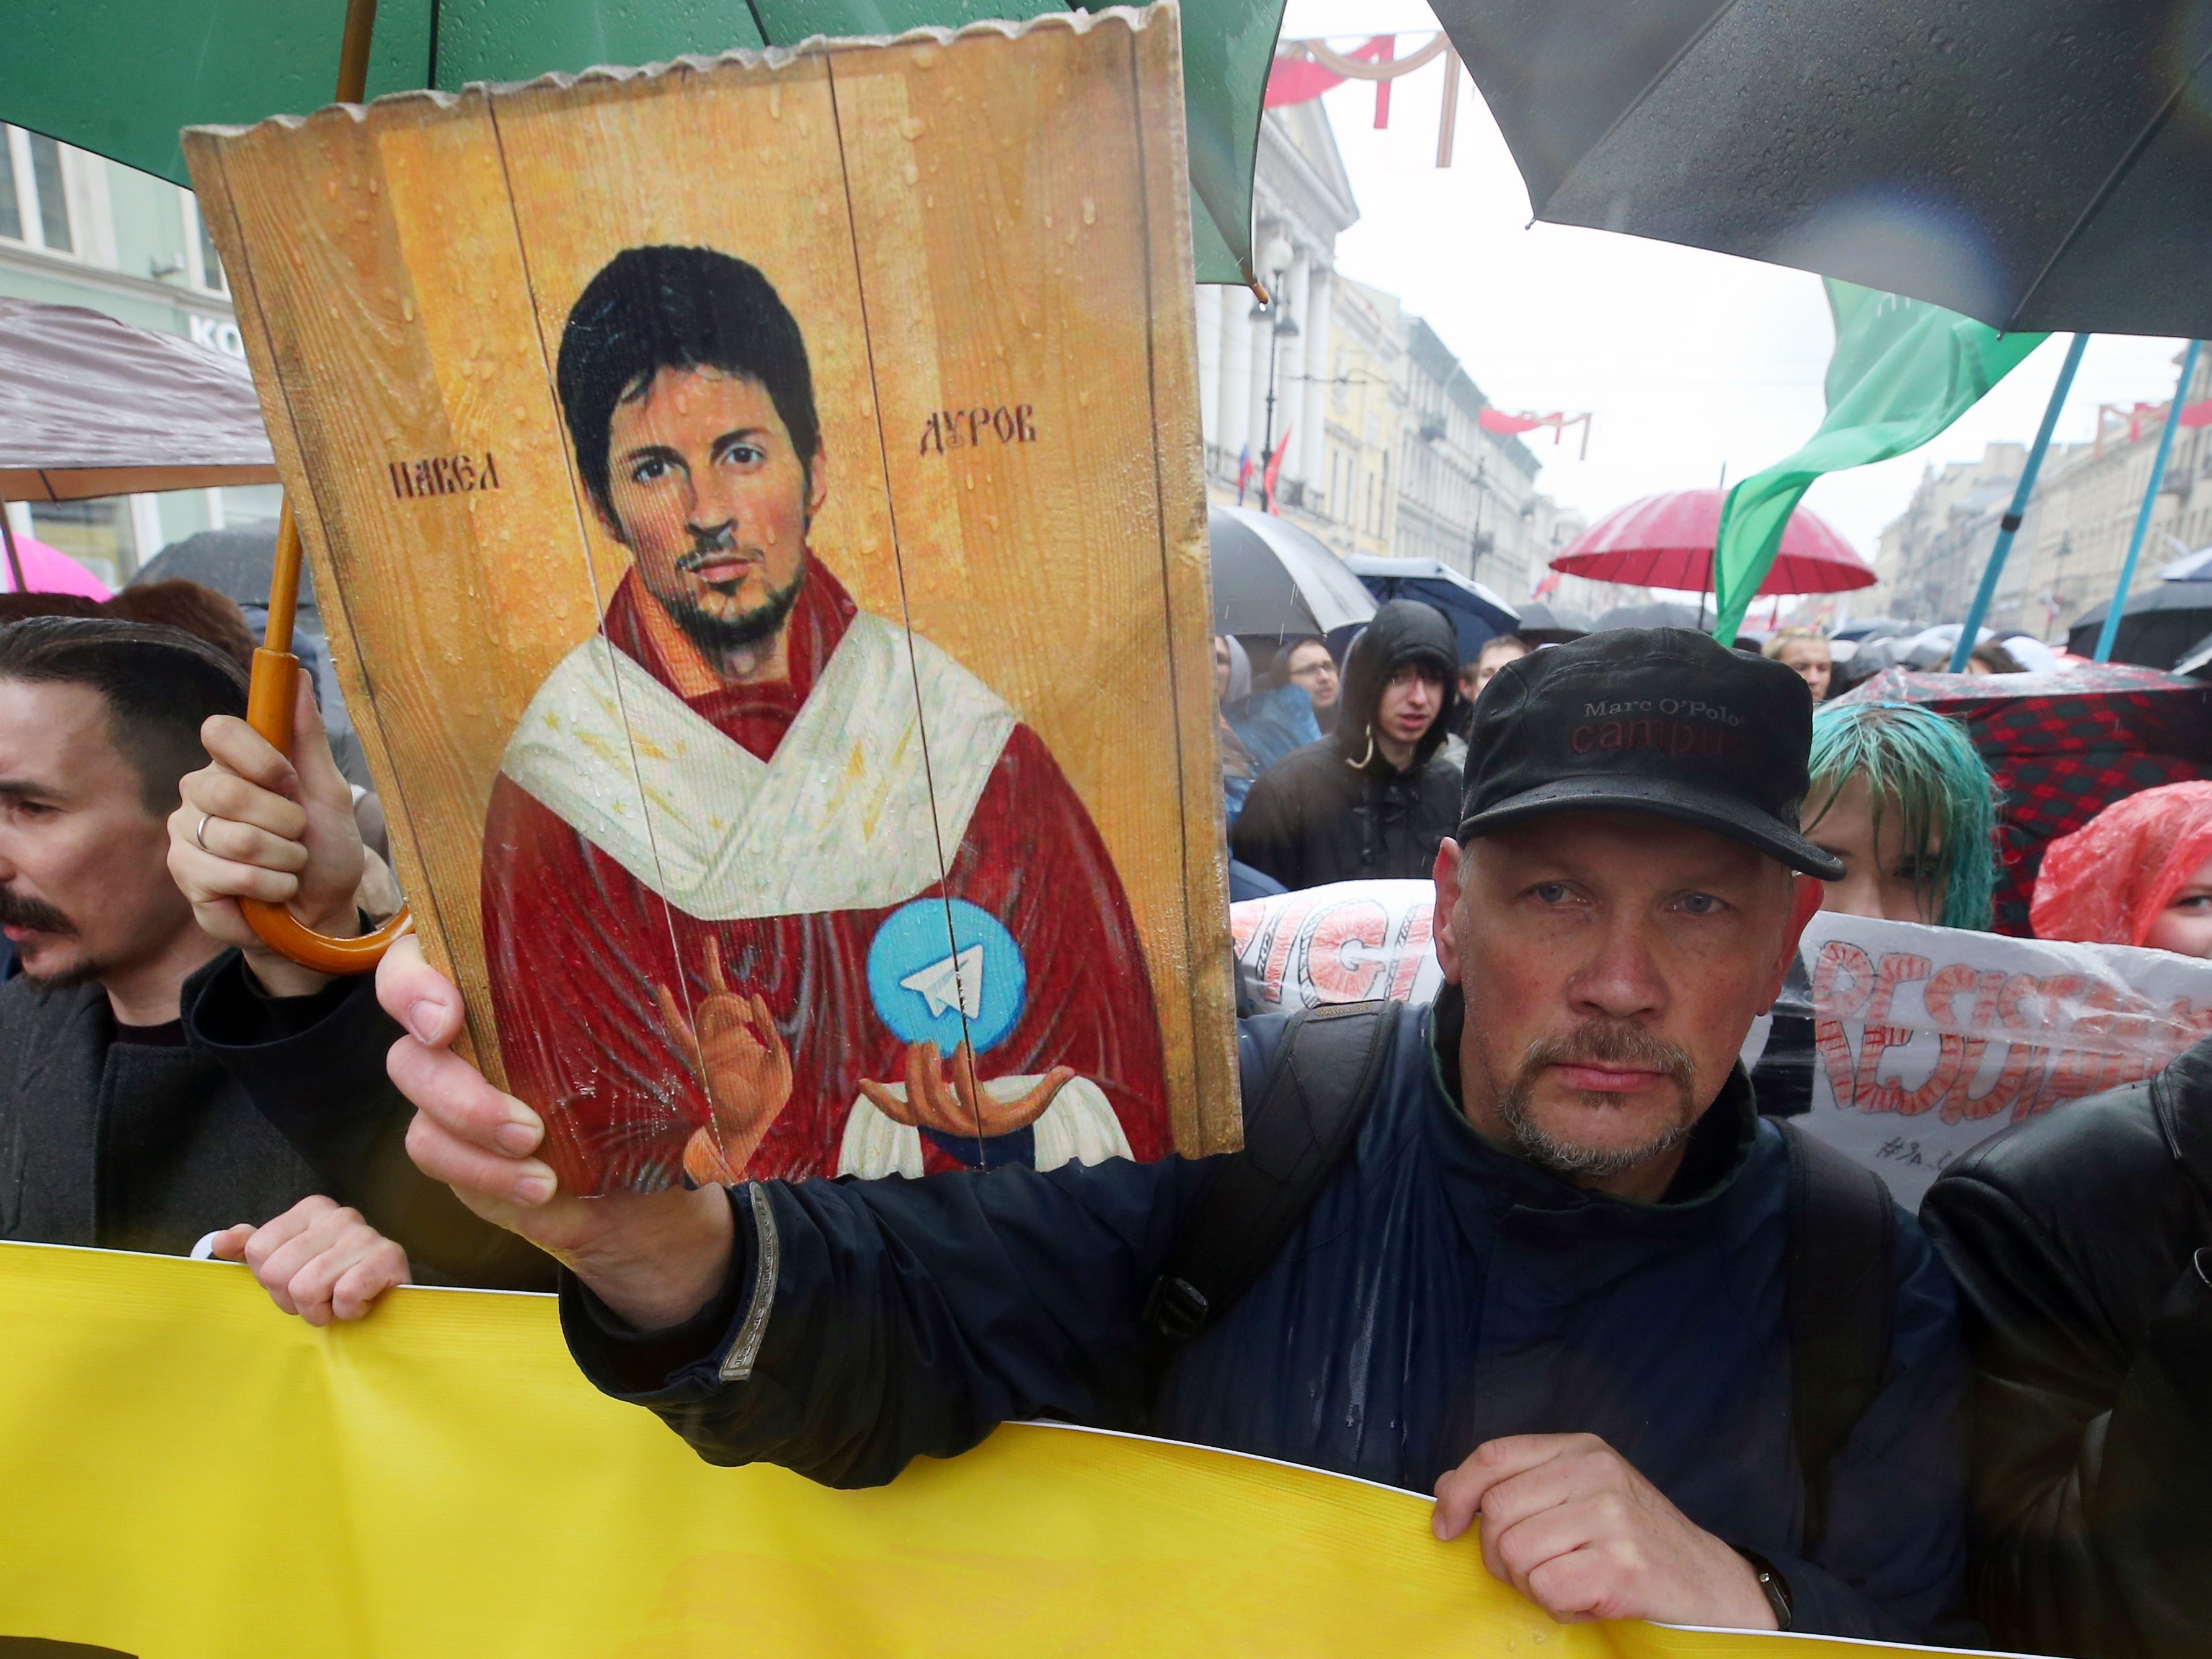 Demonstranten halten ein Zeichen von Pavel Durov, das in der Art eines katholischen Heiligen gemalt ist